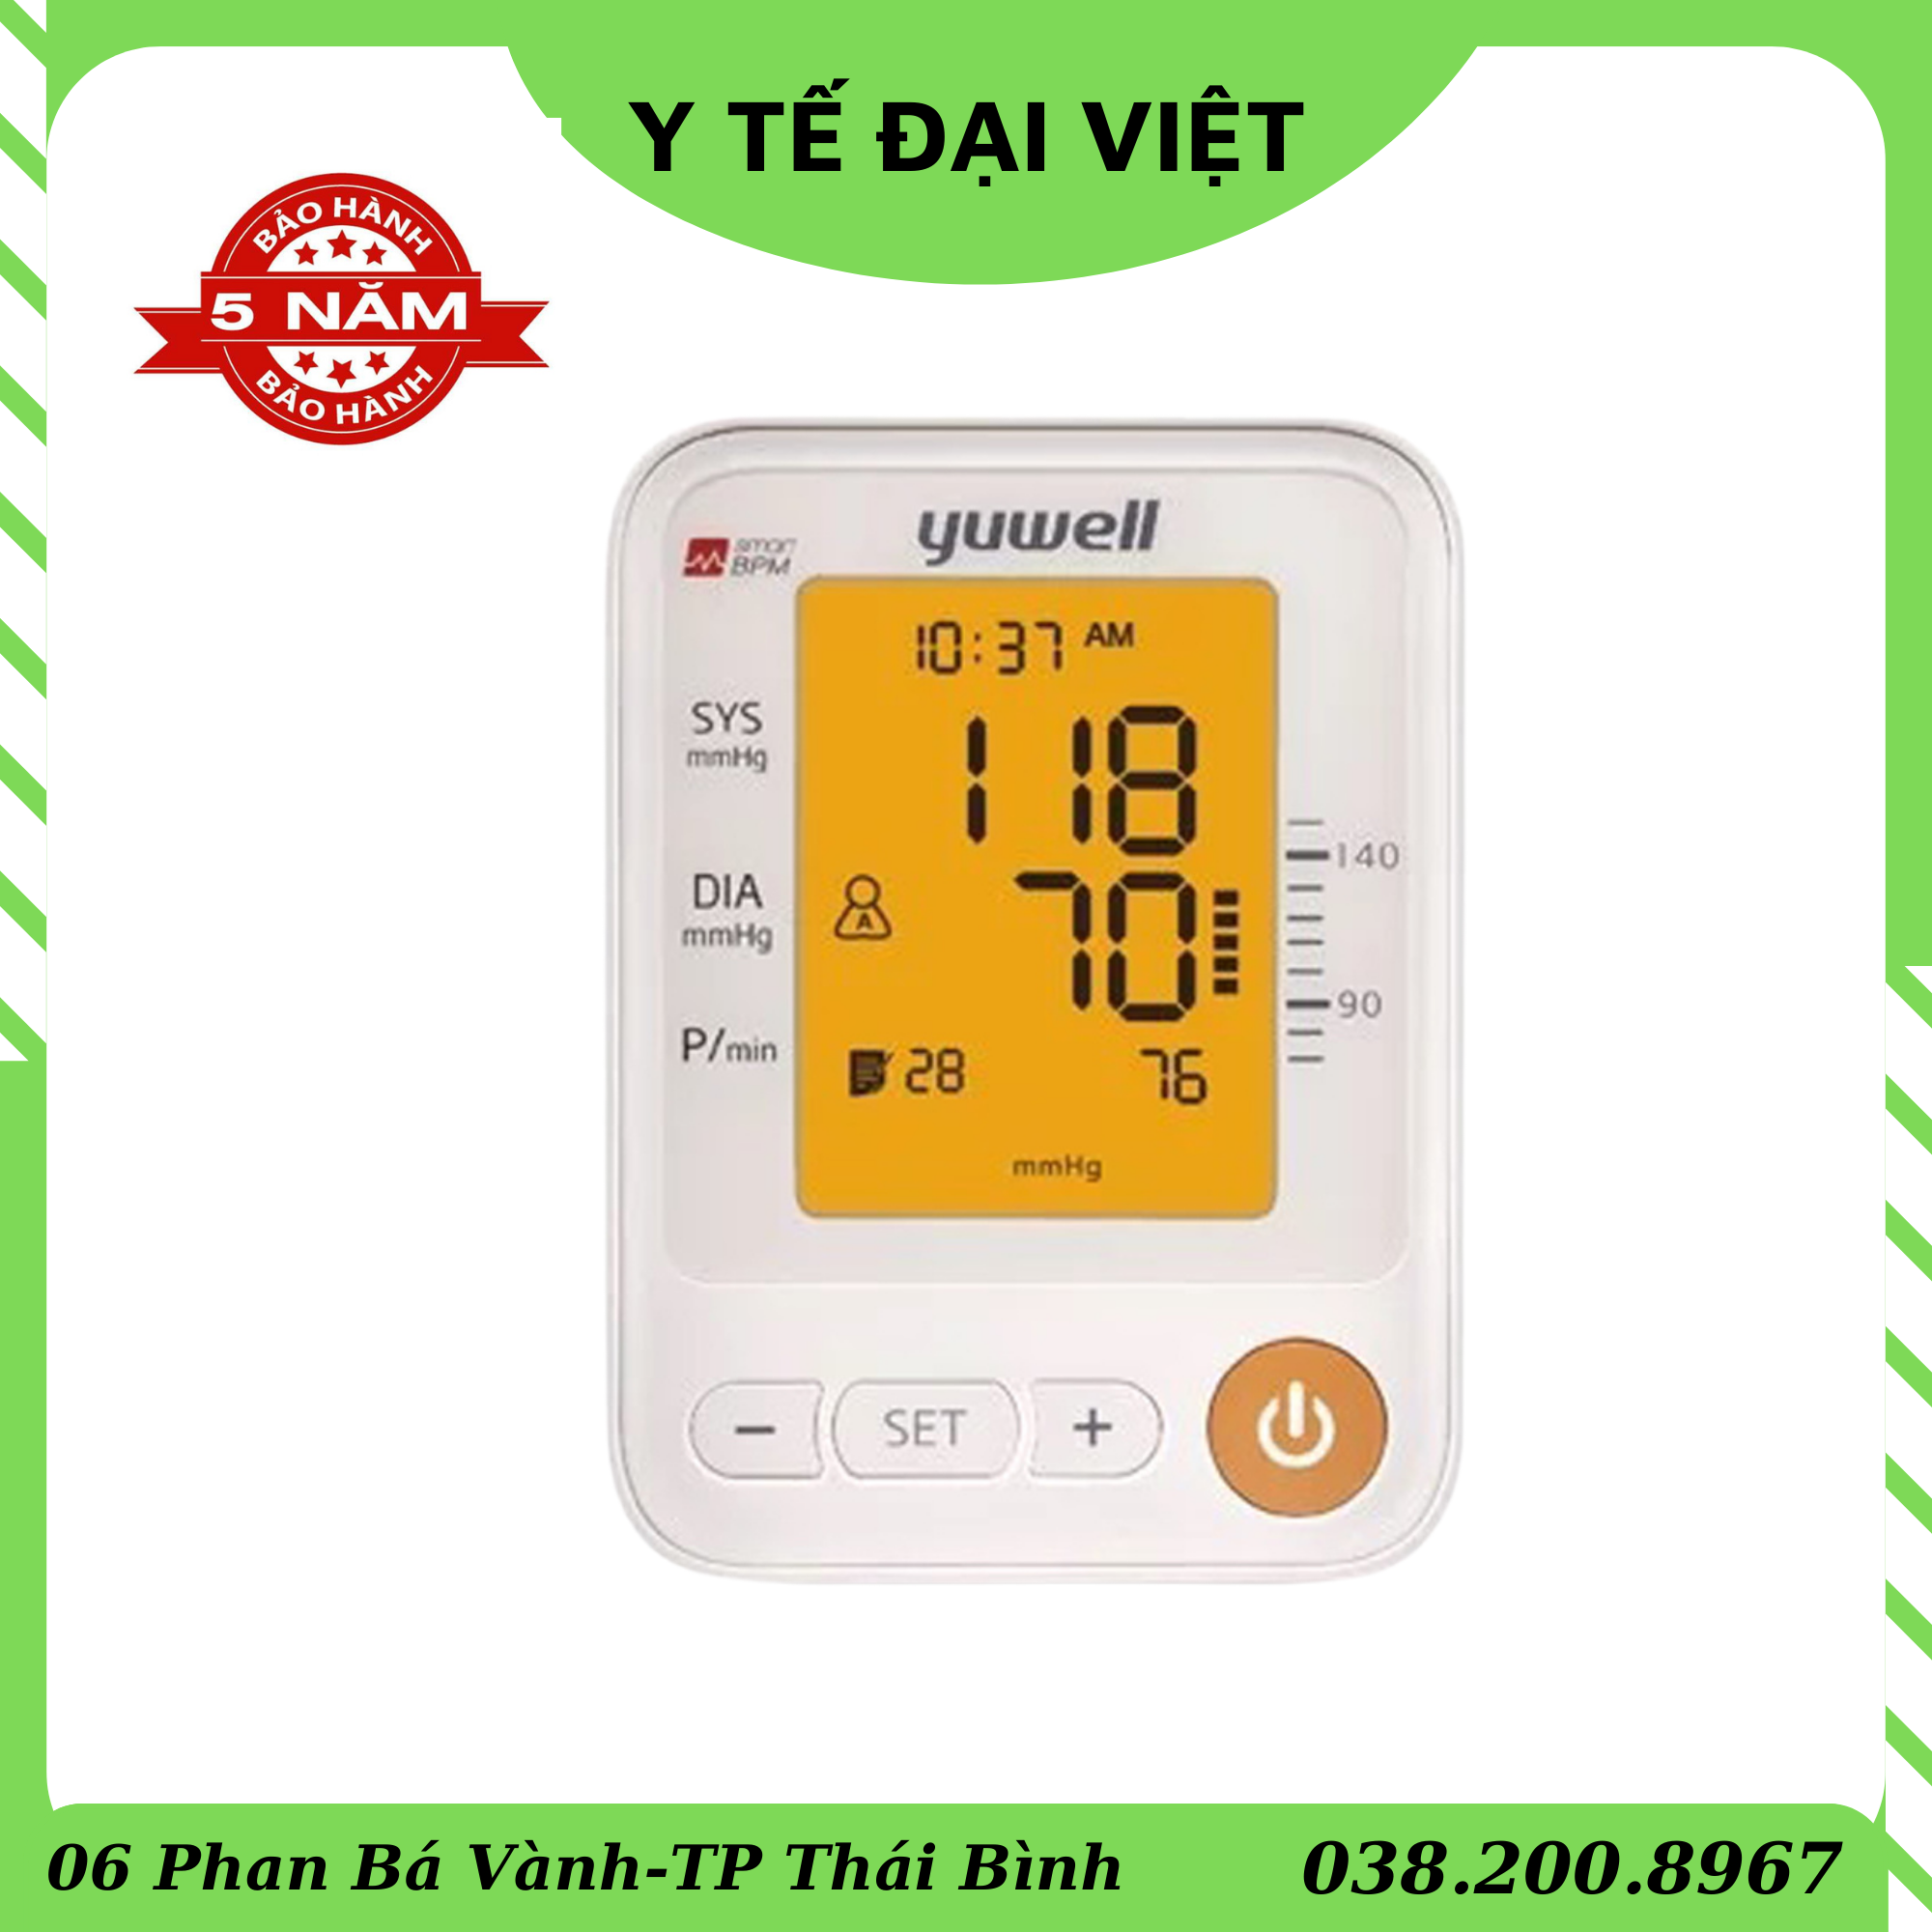 Máy đo huyết áp Yuwell 650D có giọng nói Tiếng Việt bảo hành chính hãng 5